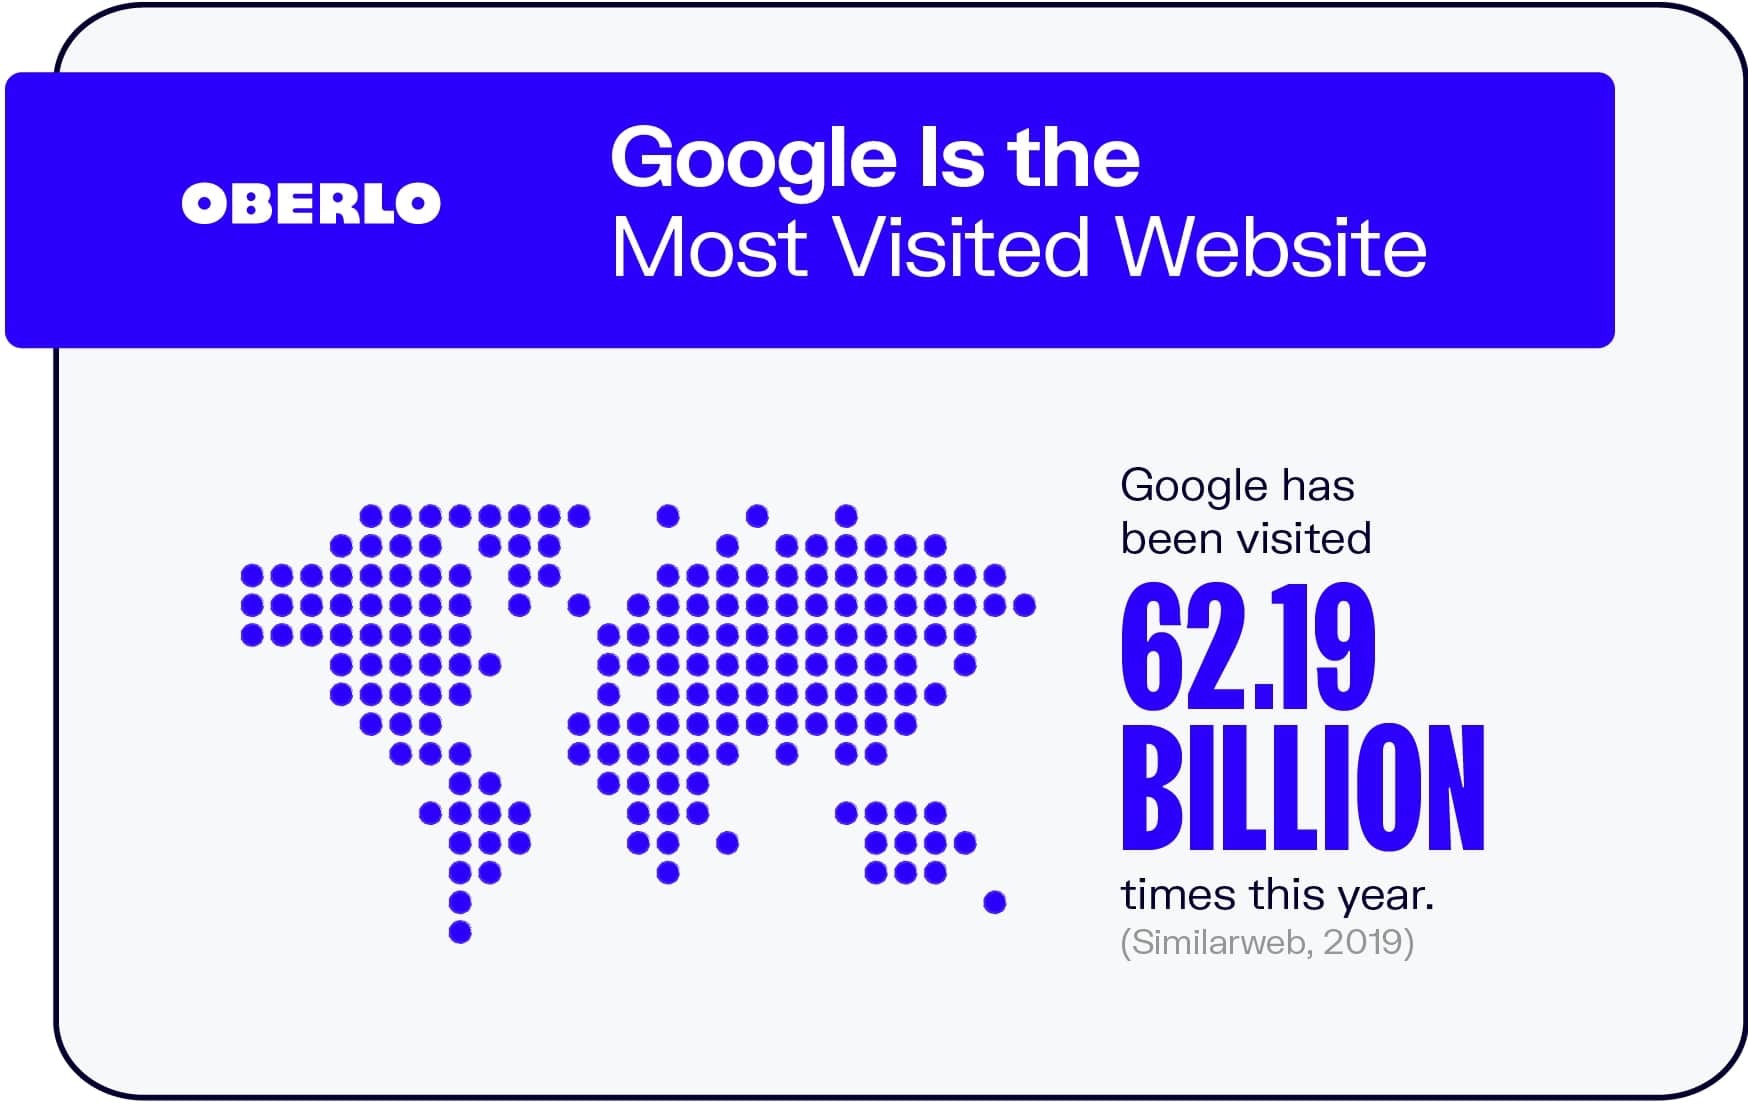 谷歌是访问量最大的网站